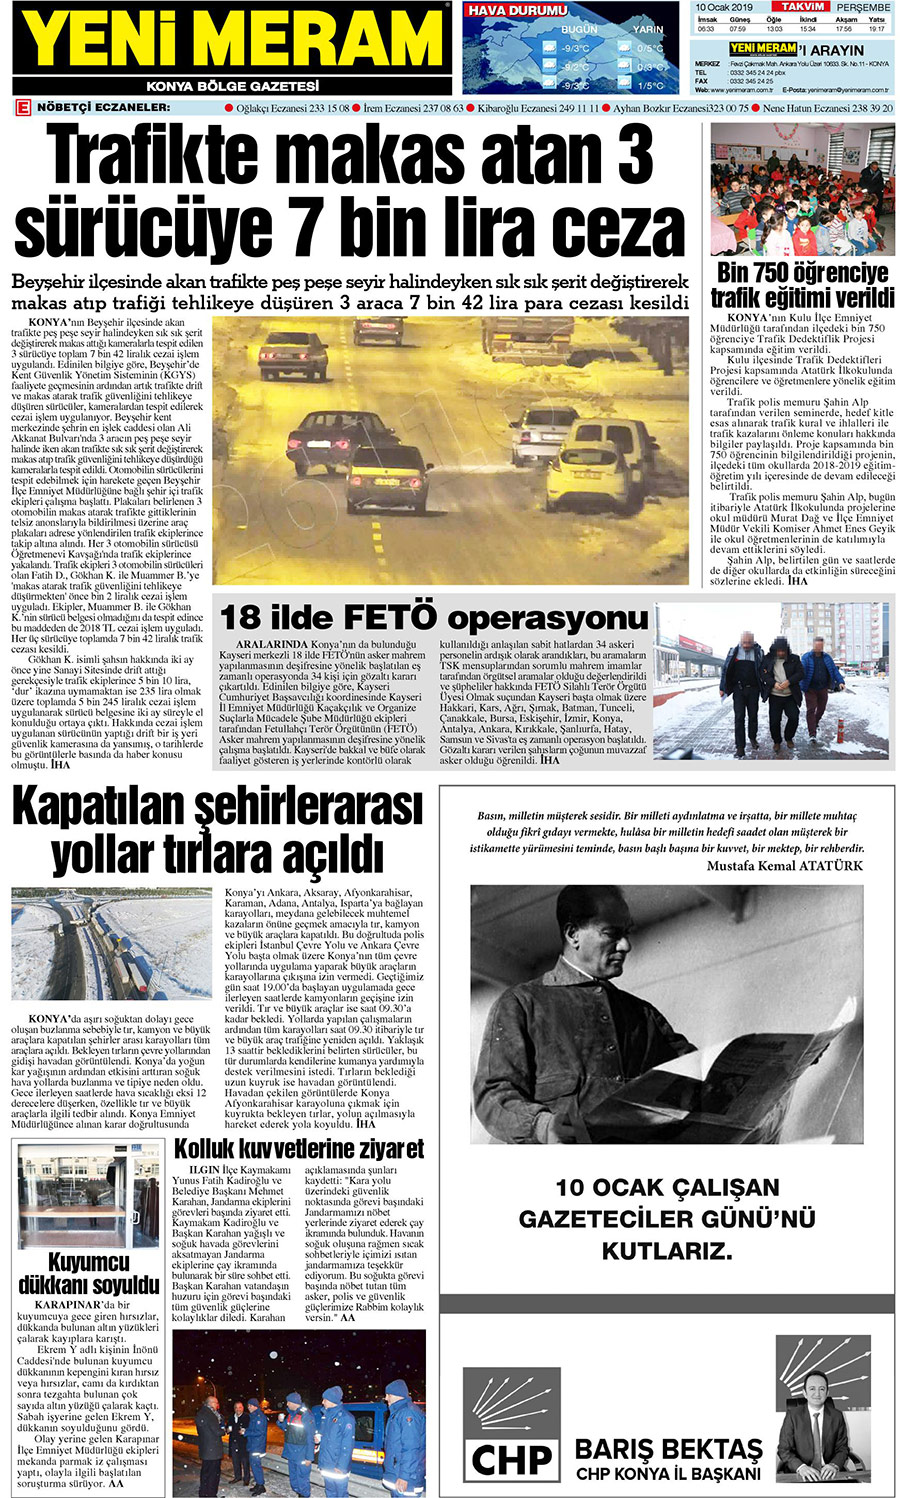 10 Ocak 2019 Yeni Meram Gazetesi